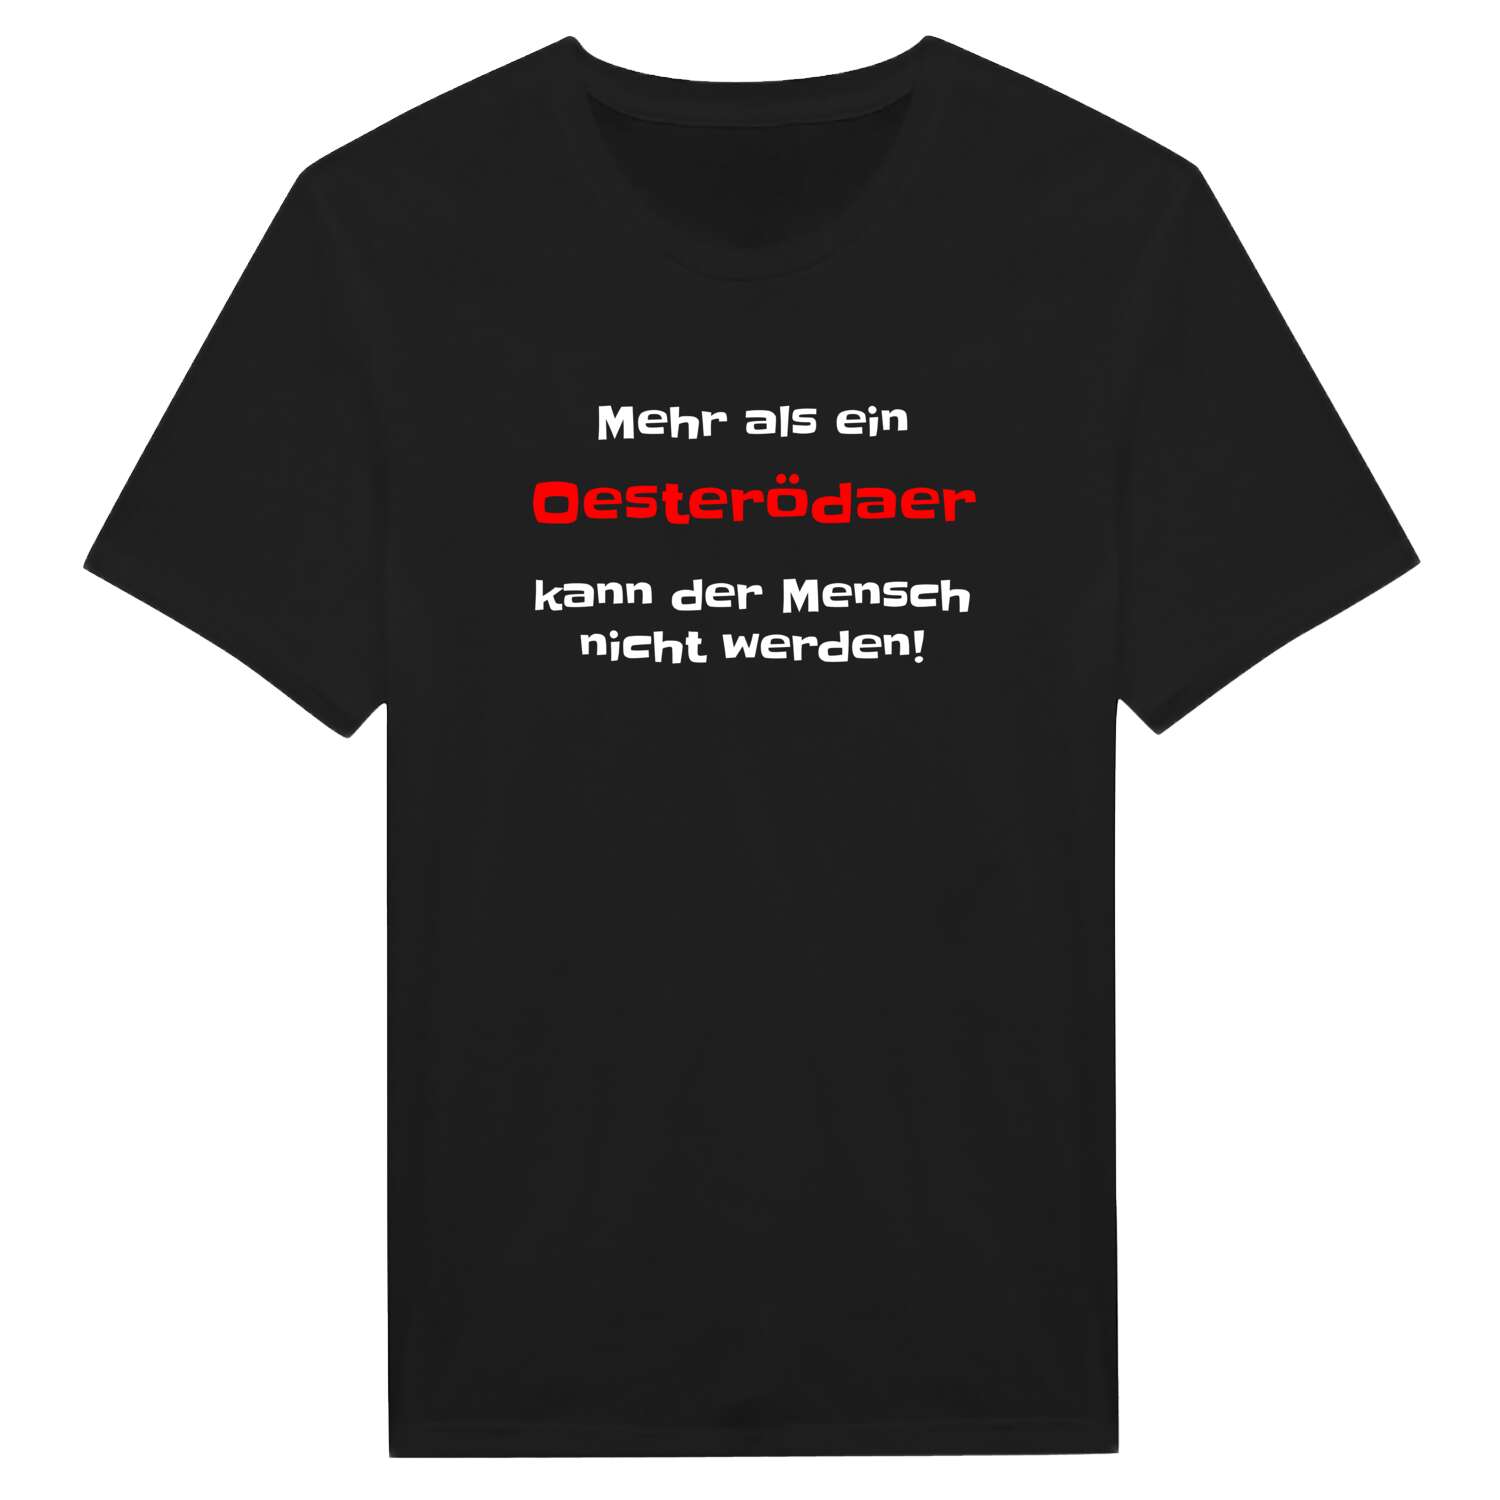 Oesteröda T-Shirt »Mehr als ein«